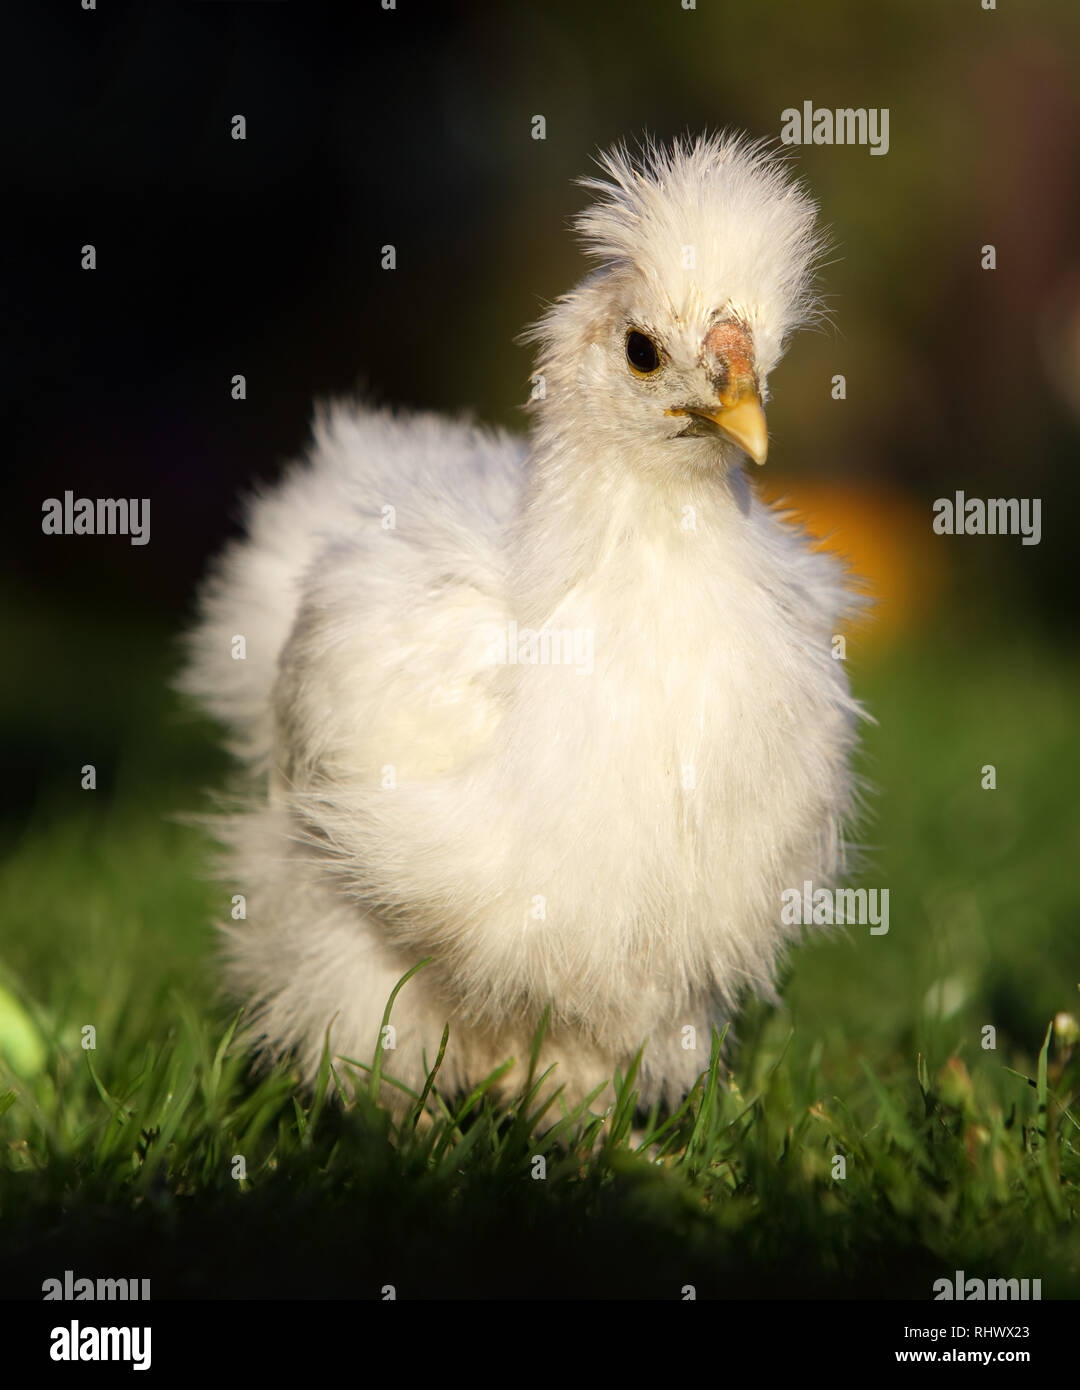 Seda blanca pollo caminando en medio de un frondoso jardín en verano Foto de stock